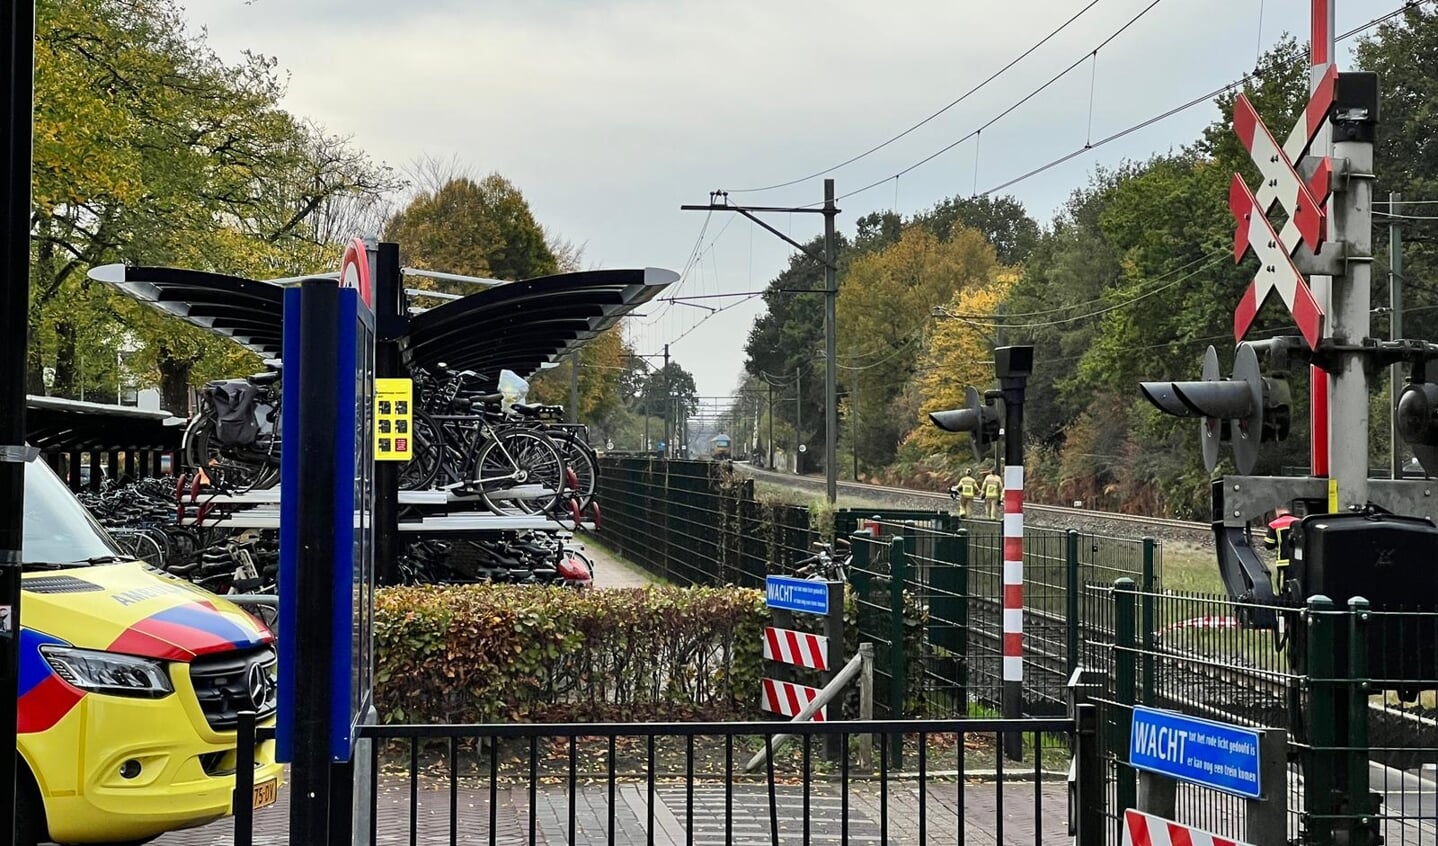 Update ongeval op spoor bij Ermelo: treinen rijden weer, getuigen kunnen bellen naar tel.0900-8844 voor slachtofferhulp.